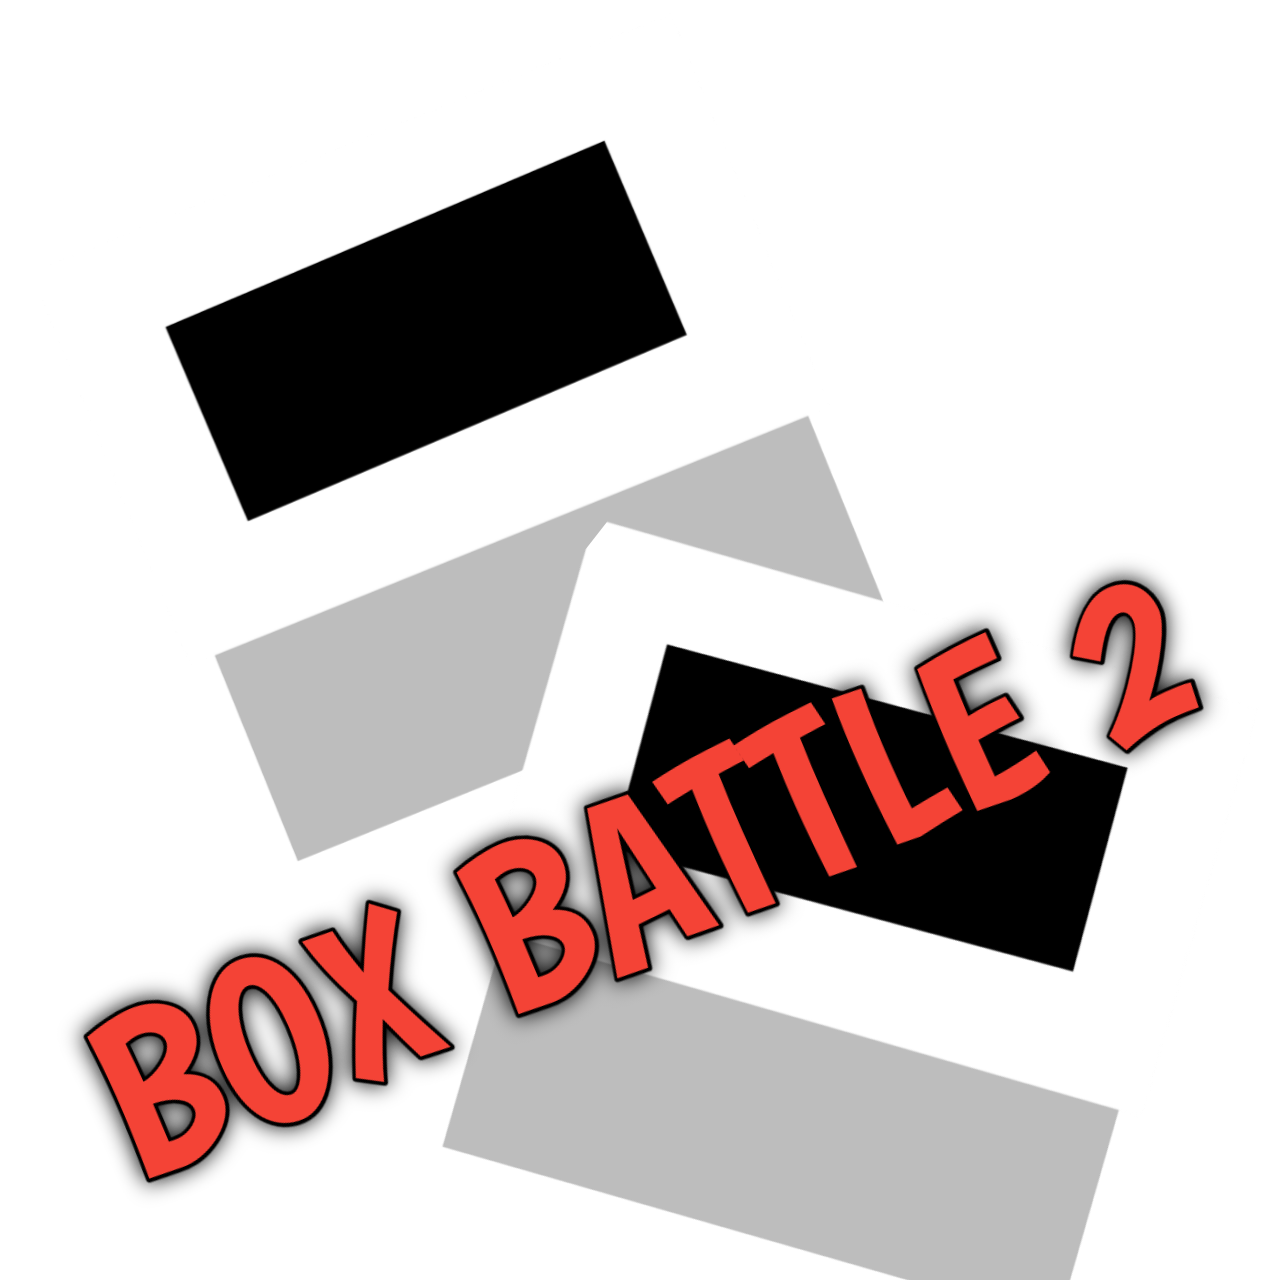 BoxBattle2